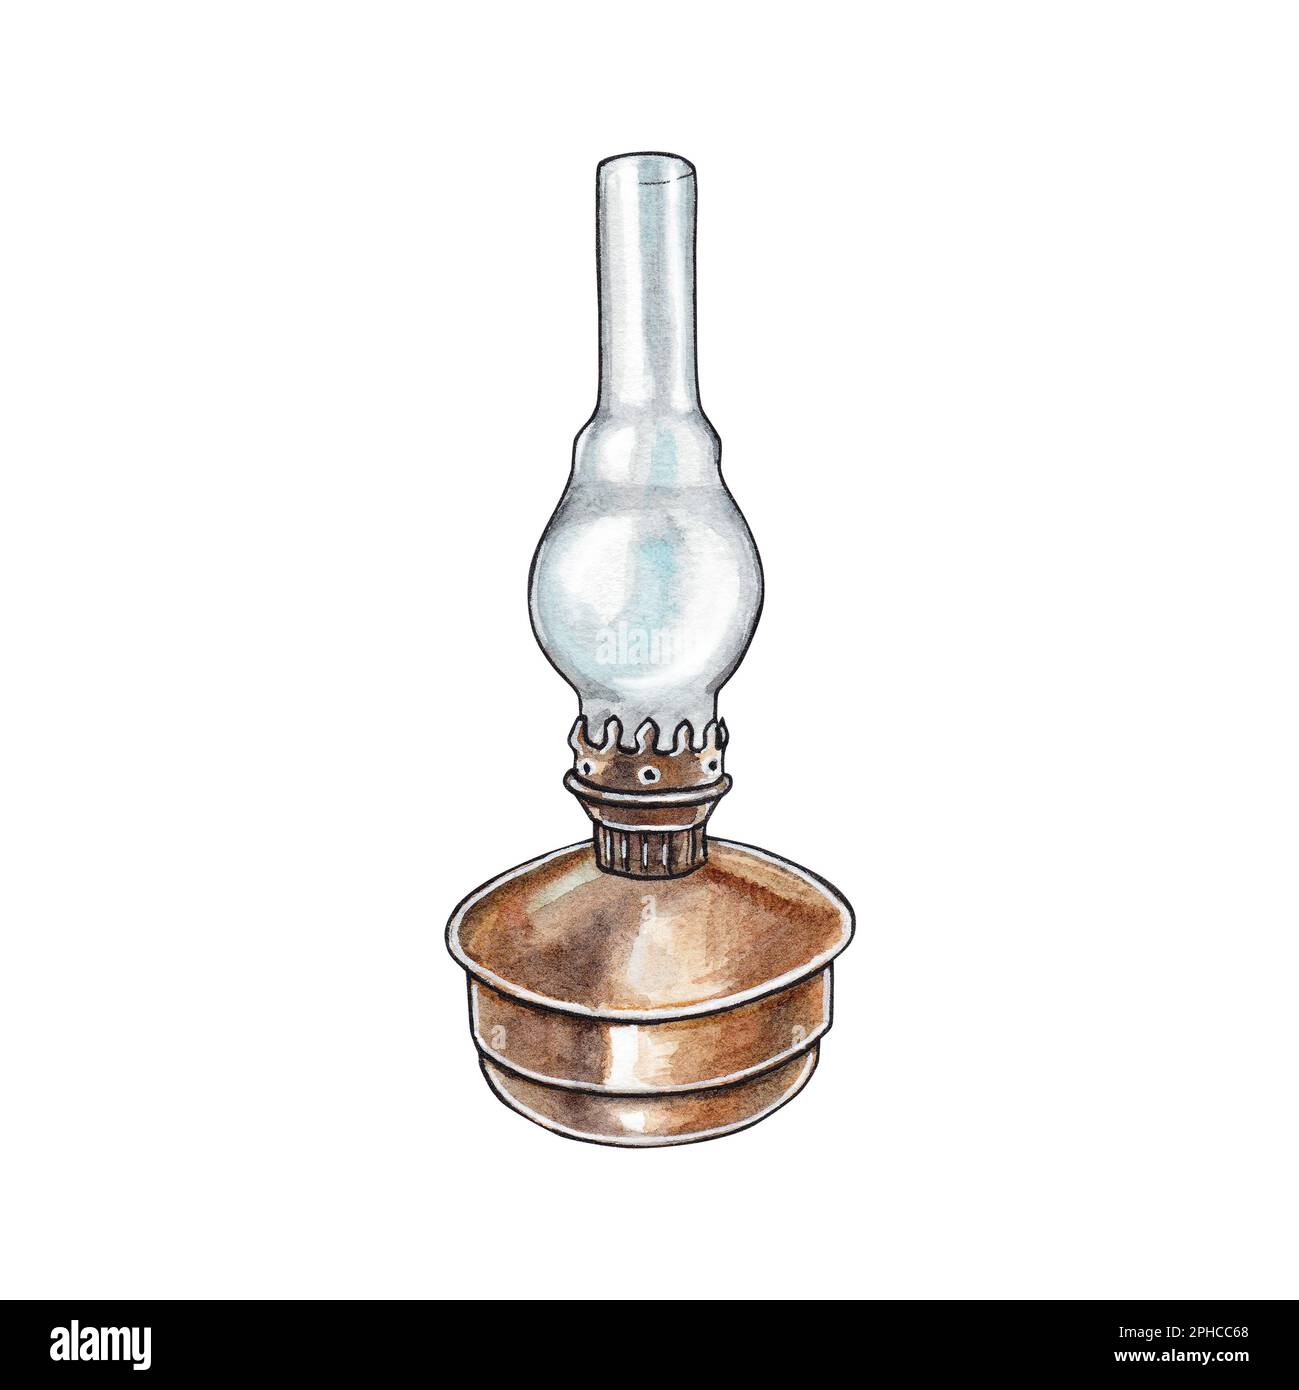 oil kerosene lamp game pixel art vector illustration Stock Vector Image &  Art - Alamy